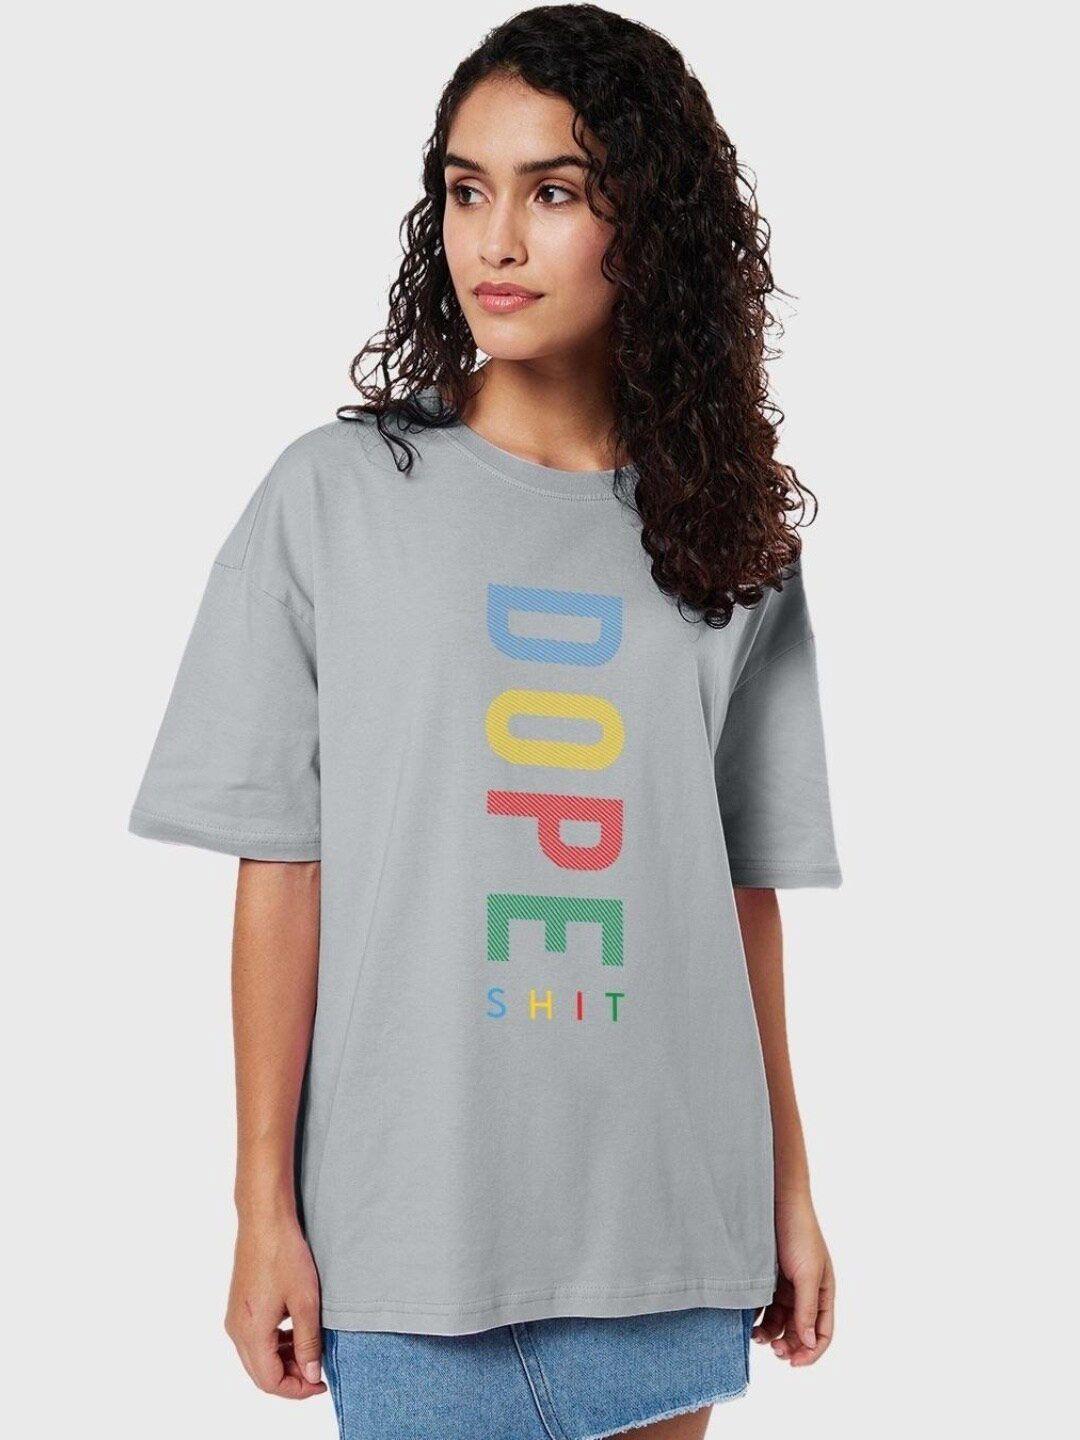 bewakoof-women-dope-shit-typography-oversized-t-shirt